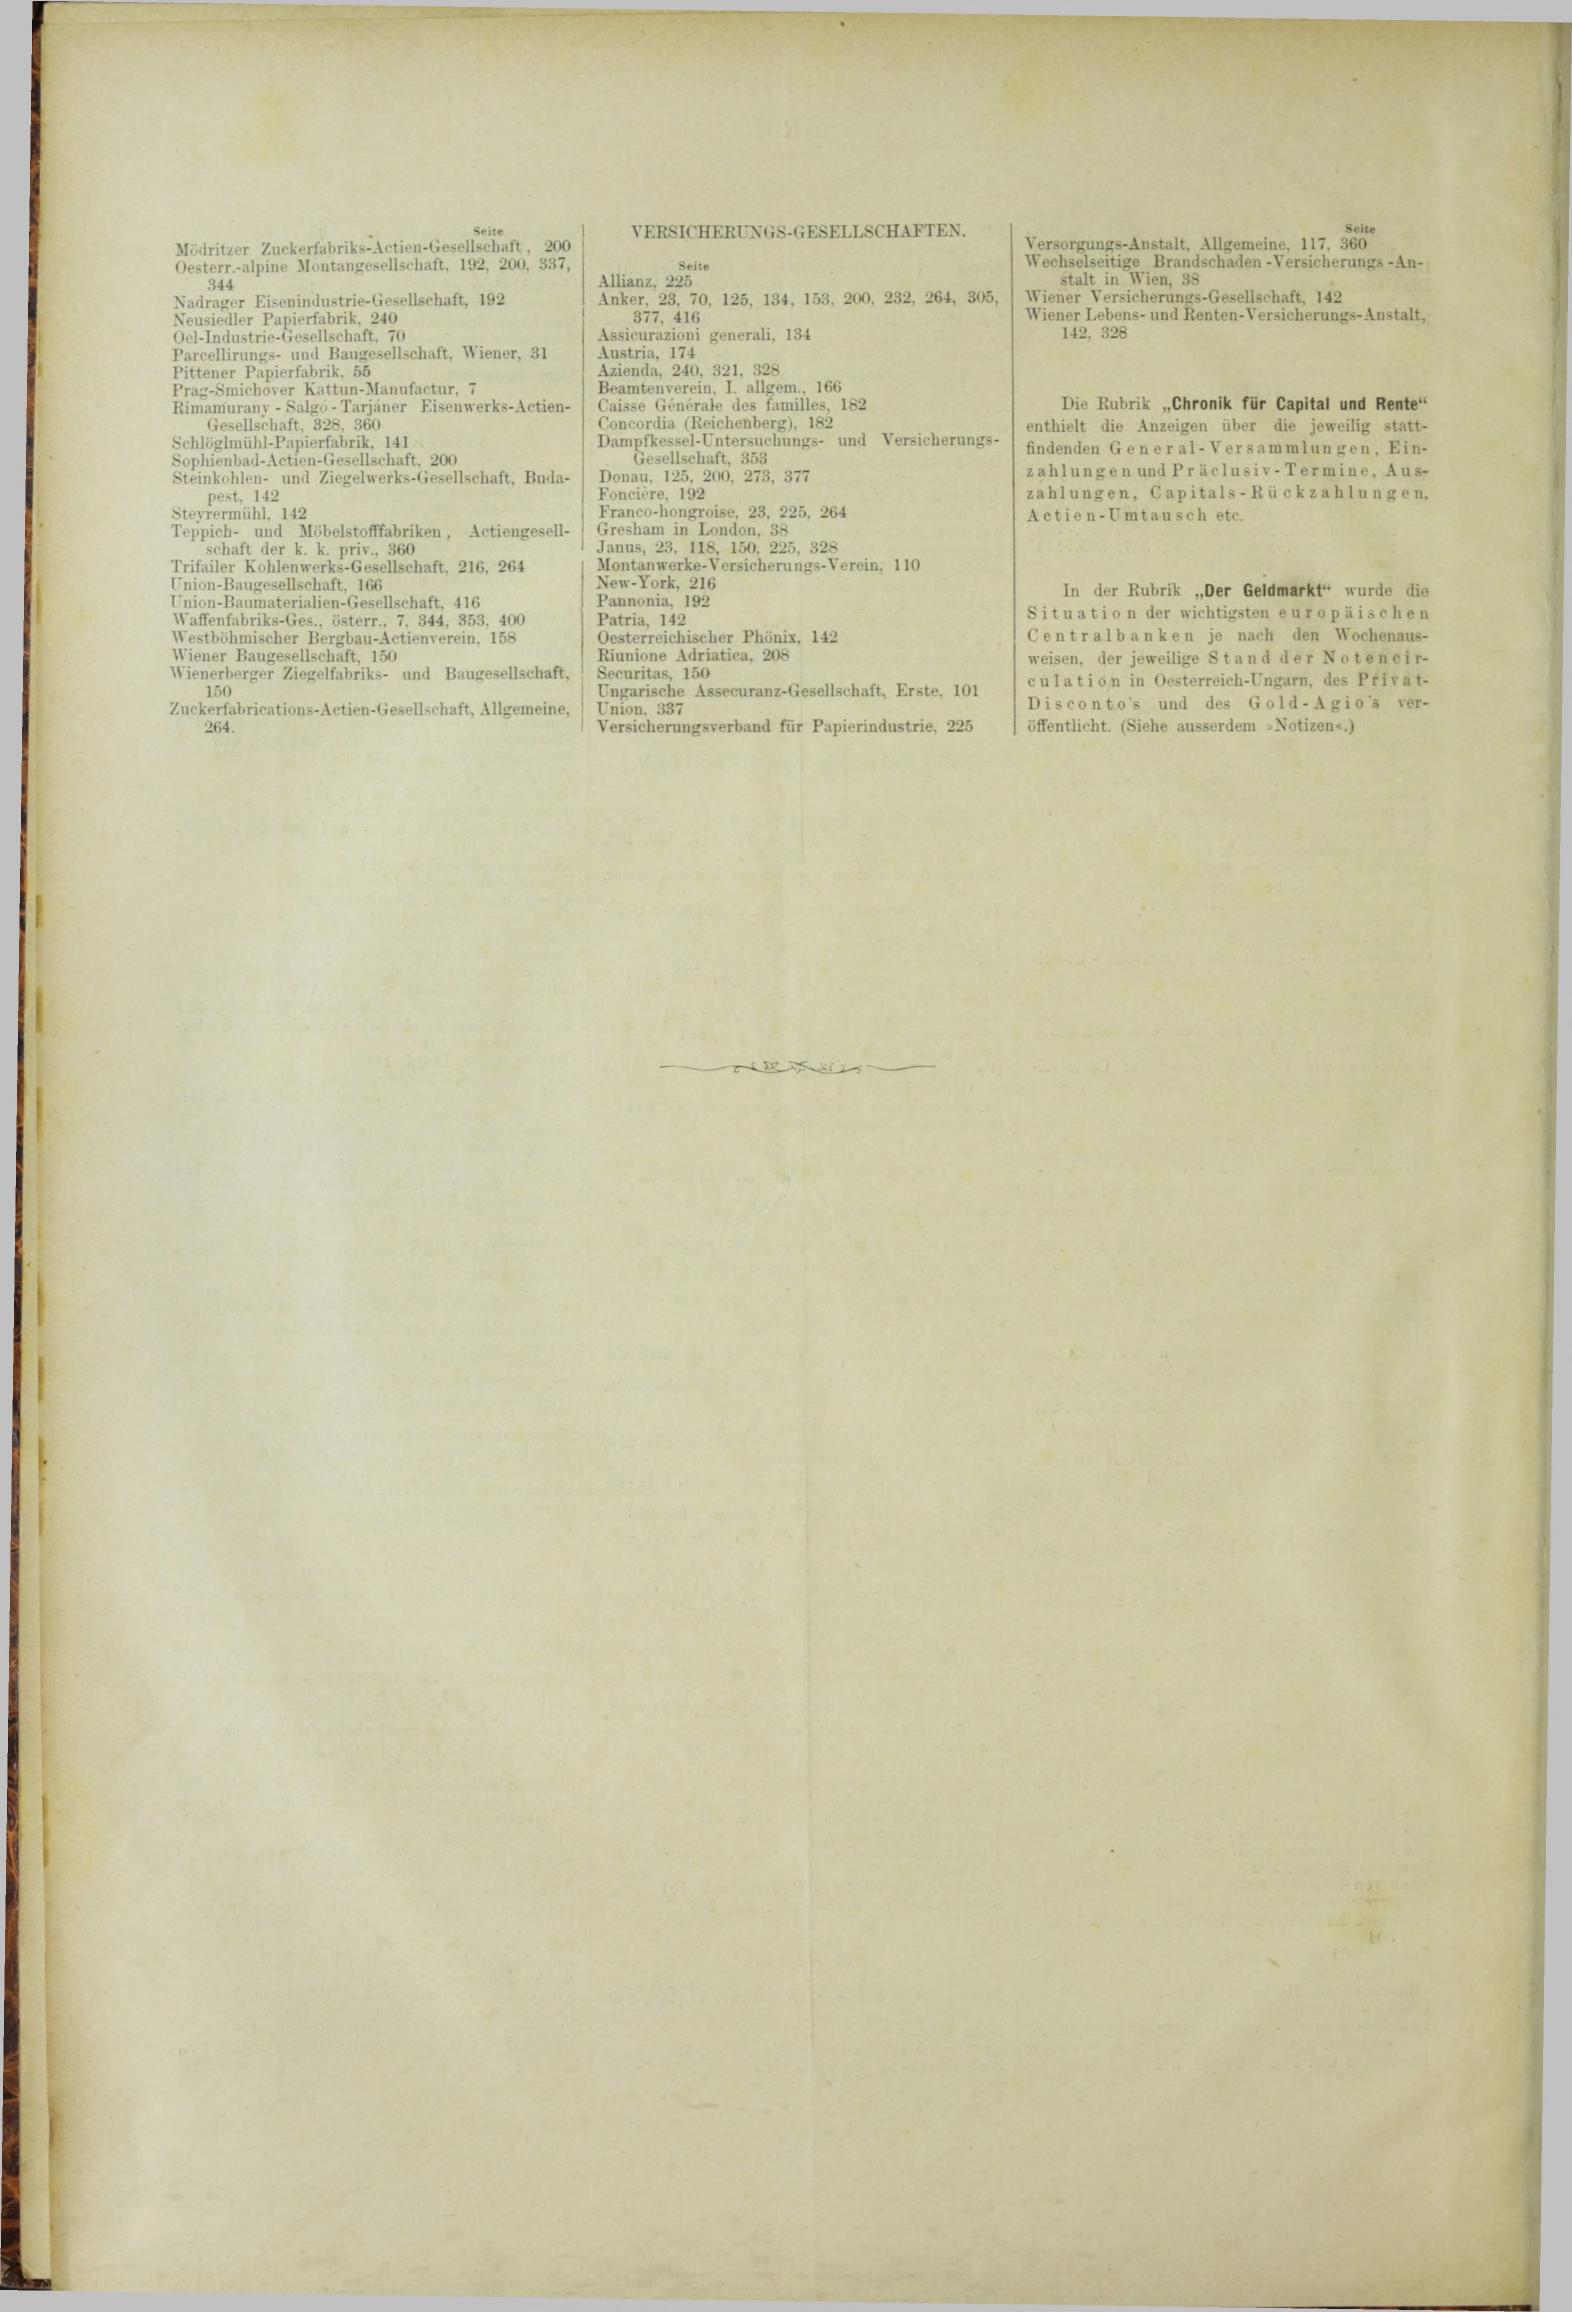 Der Tresor 04.10.1883 - Seite 12